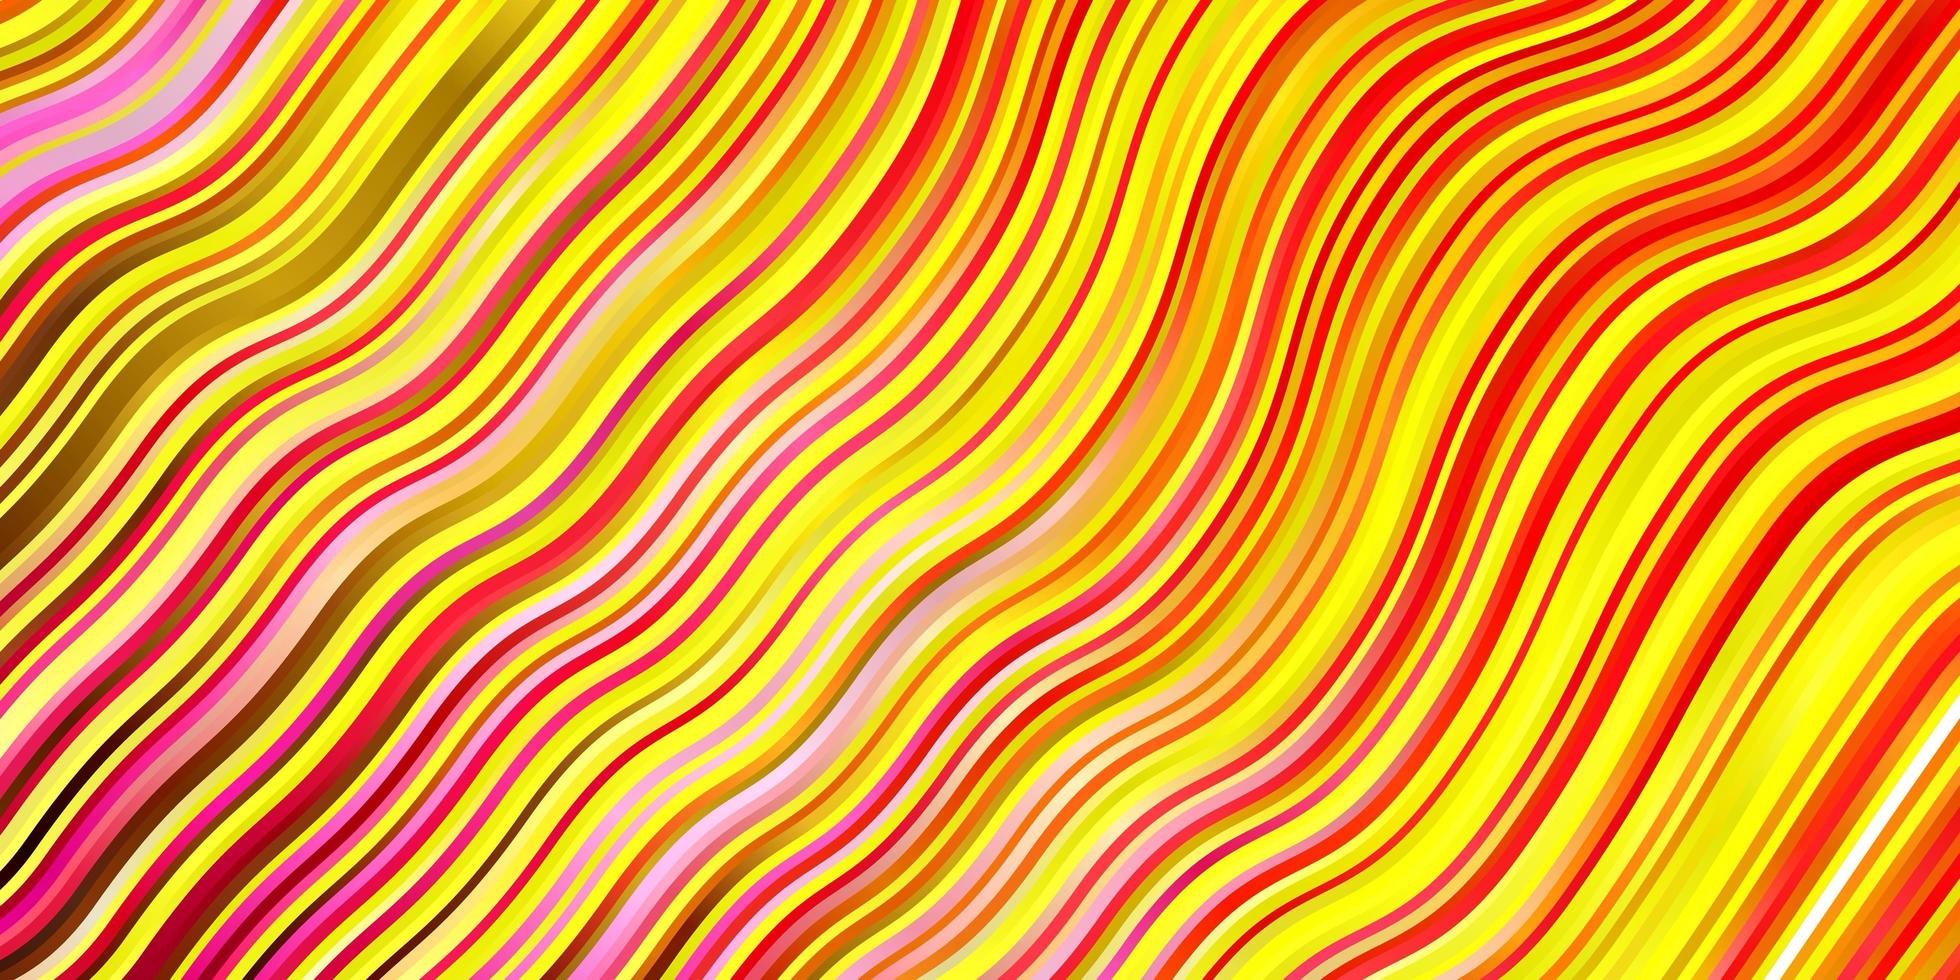 hellrosa, gelbes Vektorlayout mit Kurven. bunte abstrakte Illustration mit Steigungskurven. Muster für Geschäftsbroschüren, Broschüren vektor